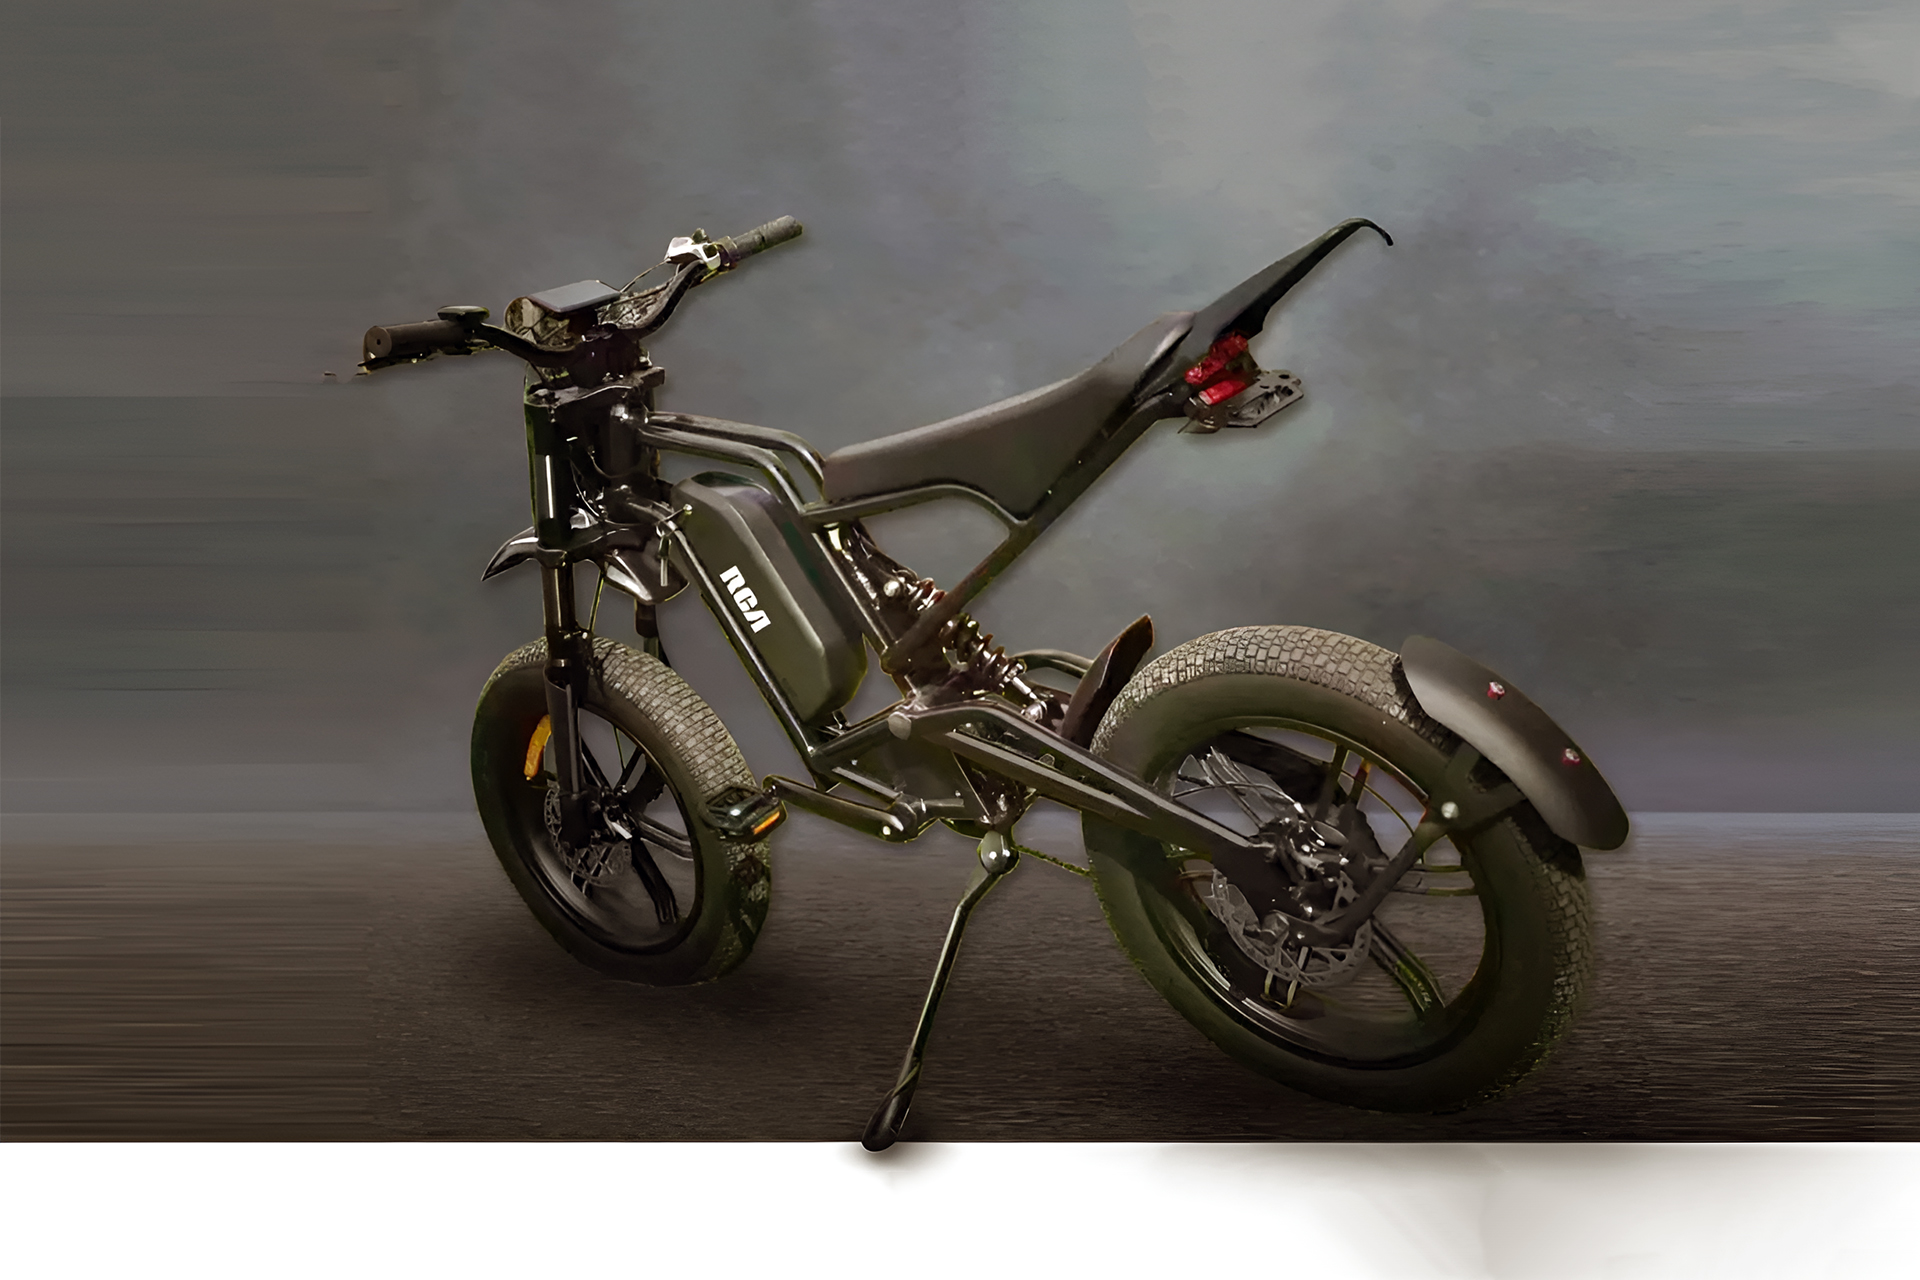 Empresa americana lanca bicicleta eletrica Off Road inspirada em carros de luxo com motor de 1000W e bateria de 12 kWh que proporciona 100 km autonomia